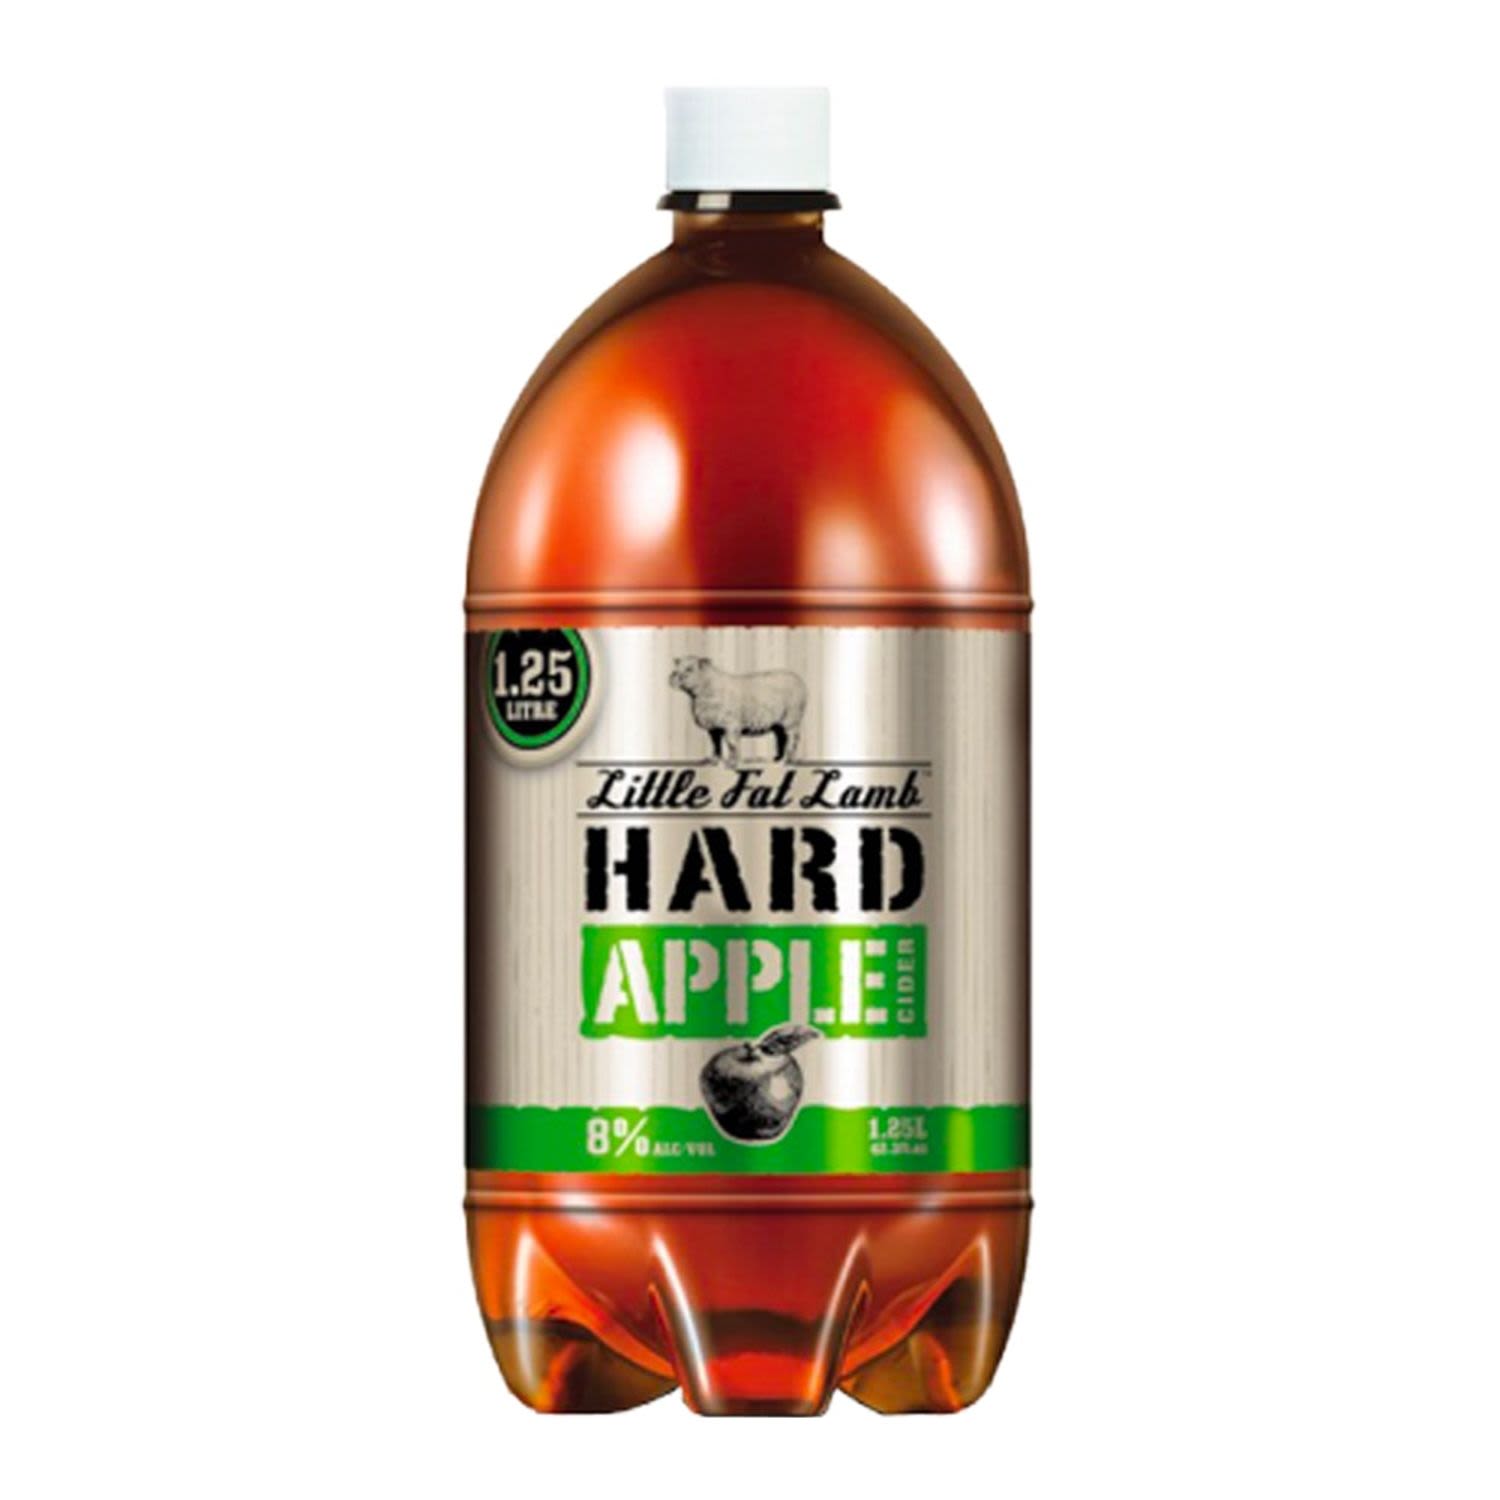 Little Fat Lamb Hard Apple Cider 1.25L<br /> <br />Alcohol Volume: 8.00%<br /><br />Pack Format: Bottle<br /><br />Standard Drinks: 7.9</br /><br />Pack Type: Bottle<br /><br />Country of Origin: Australia<br />